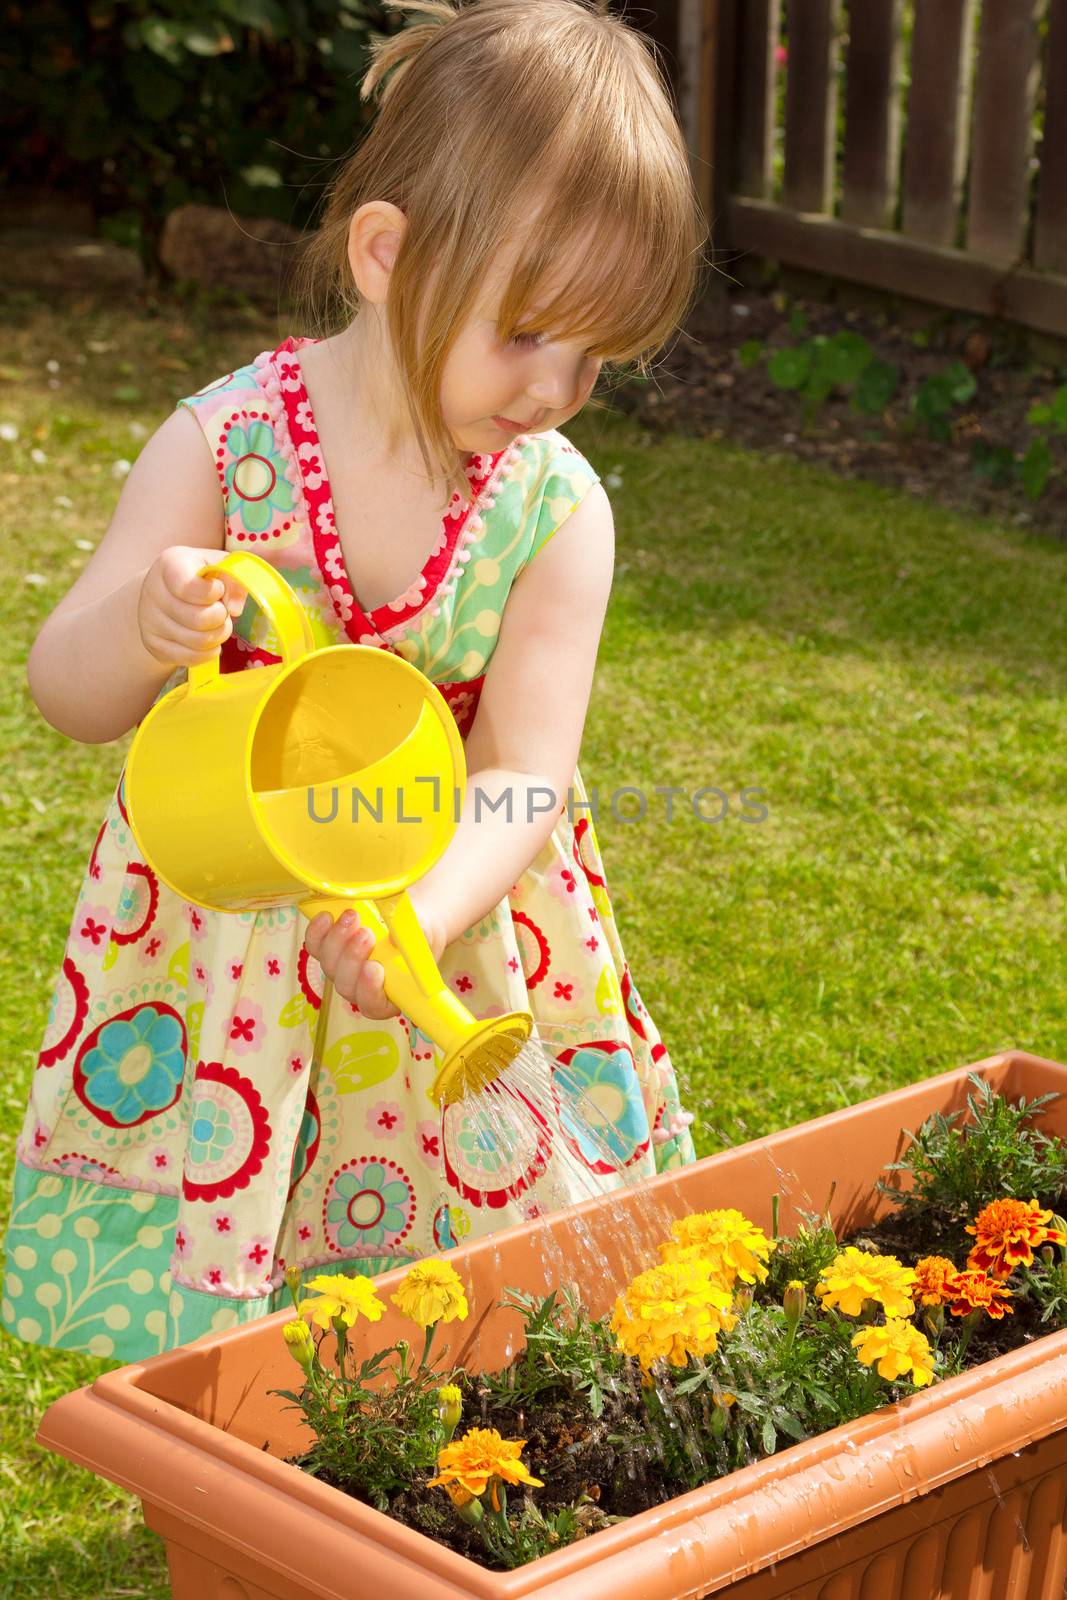 Little girl watering flowers by darkhorse2012